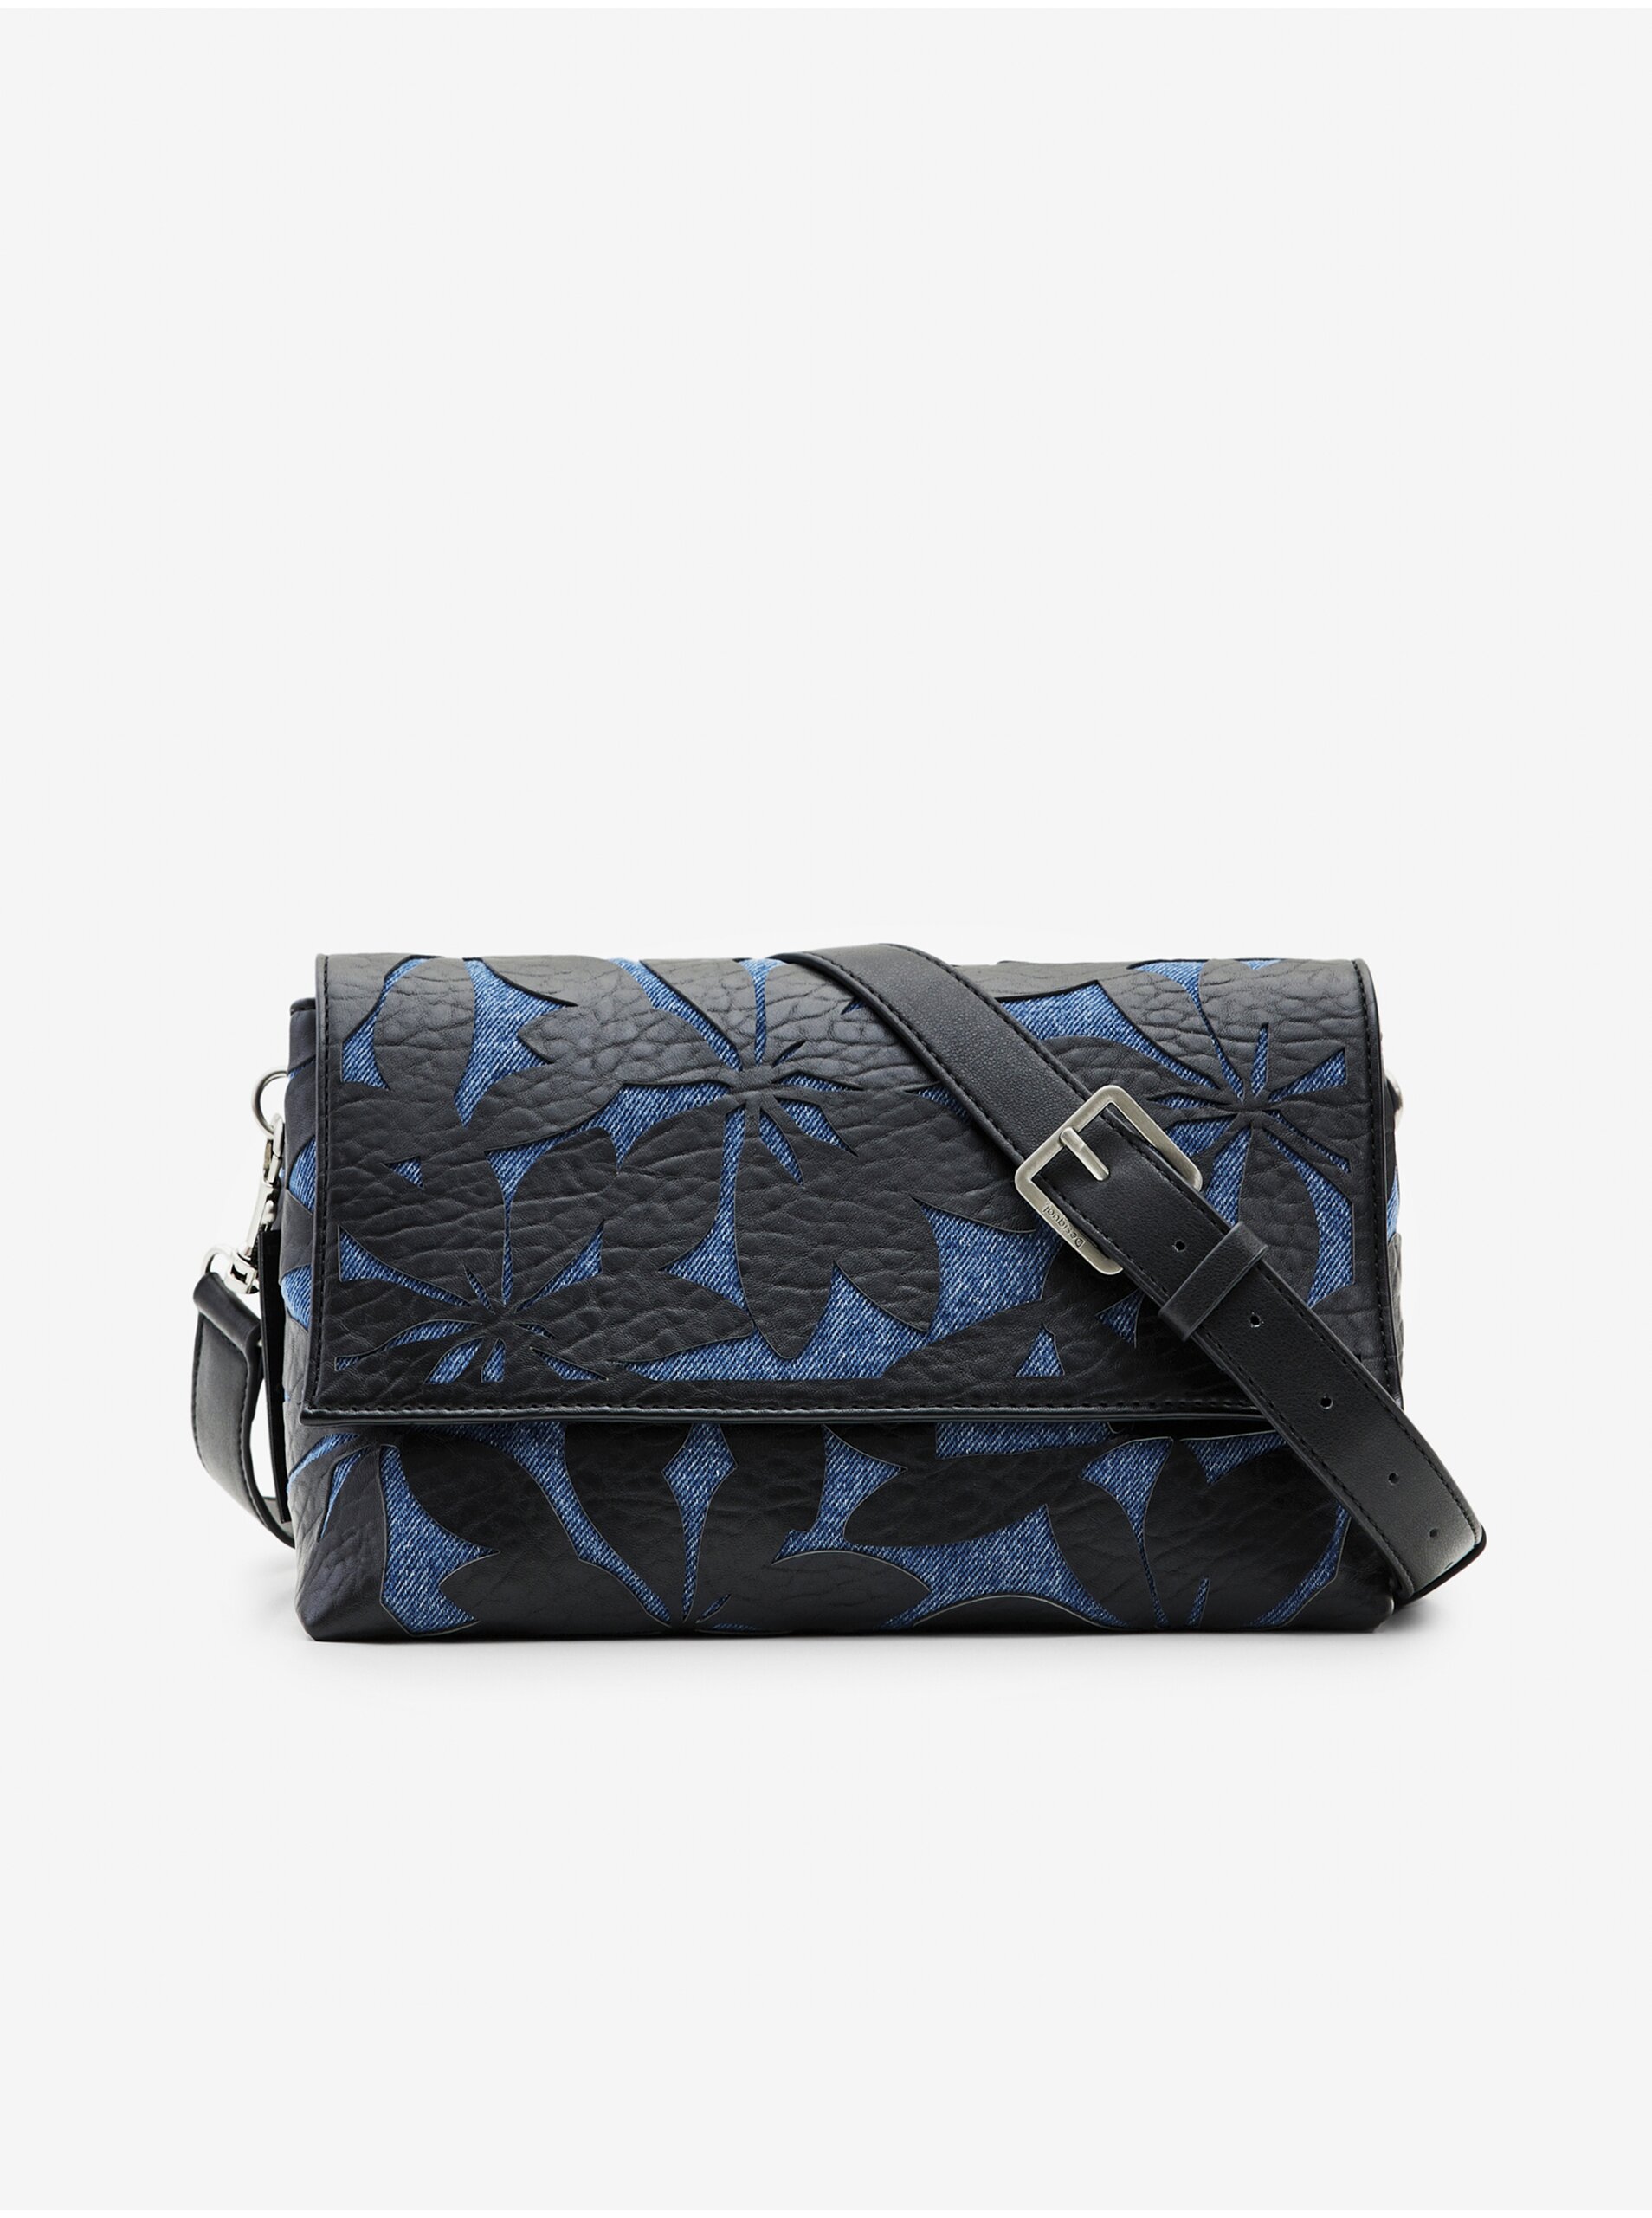 E-shop Modro-černá dámská vzorovaná kabelka Desigual Onyx Venecia 2.0